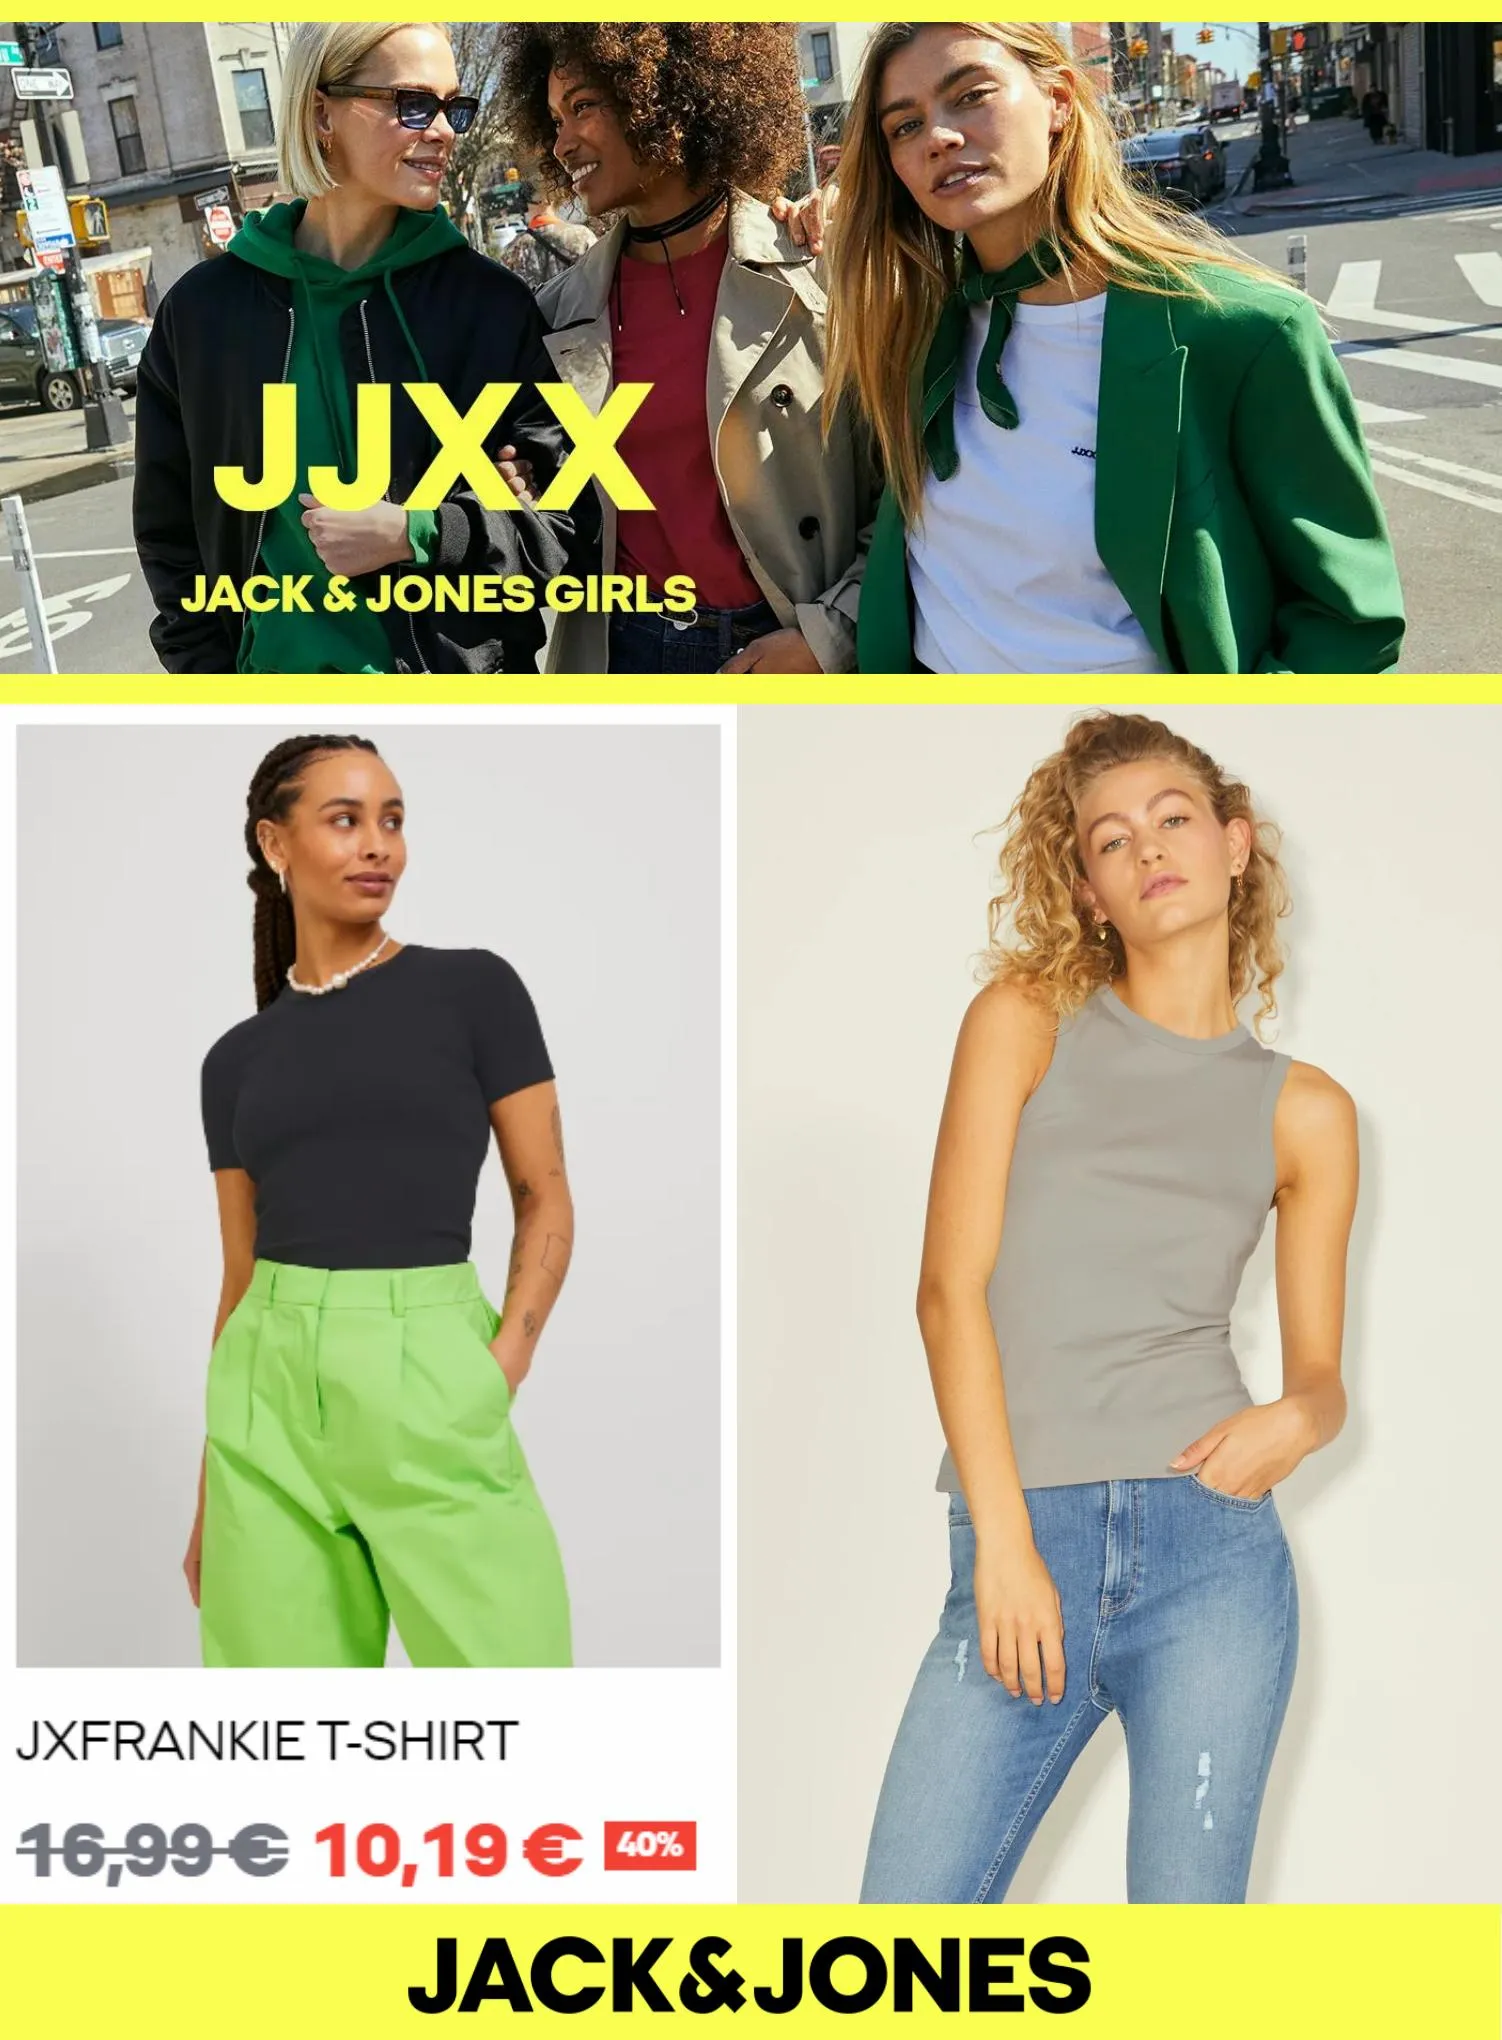 Catalogue JJXX Jack & Jones Girls, page 00001